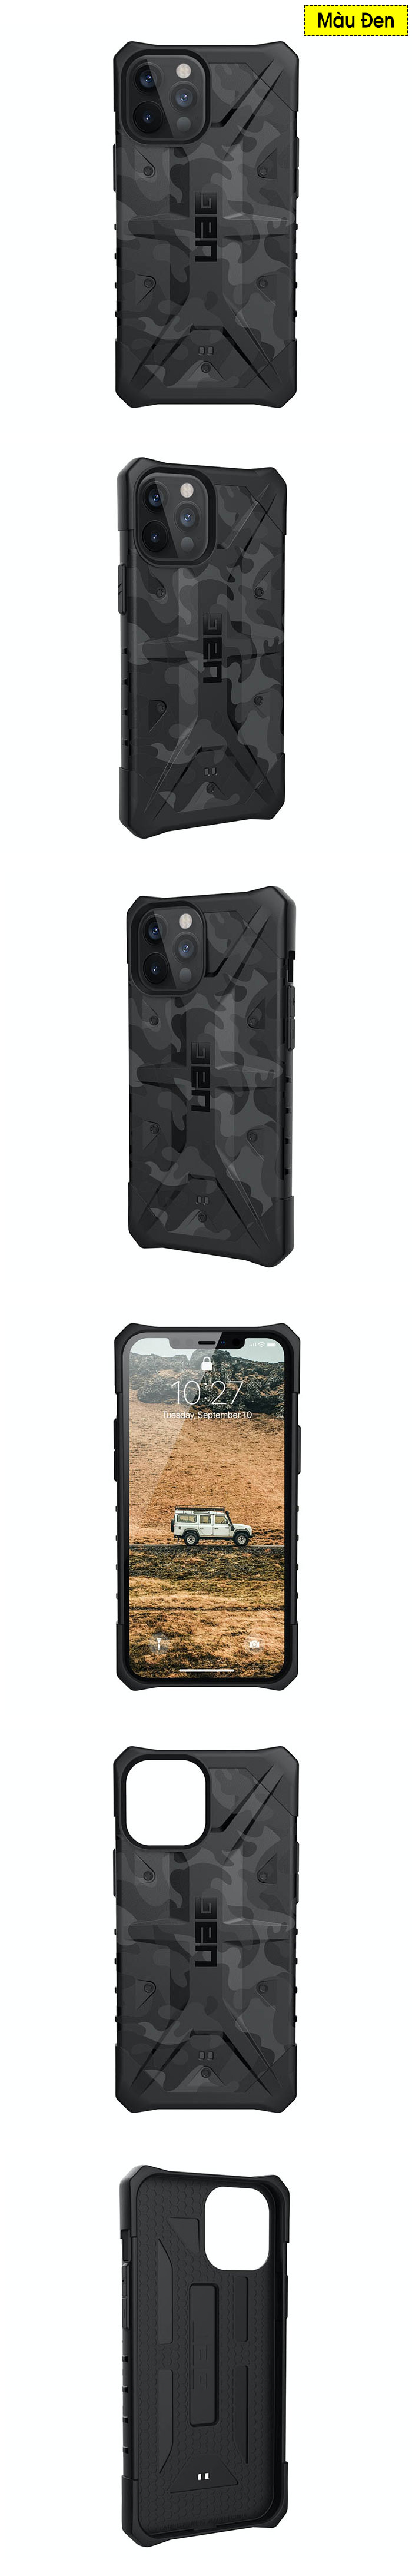 Ốp lưng iPhone 12 Pro Max UAG Pathfinder SE Camo 1